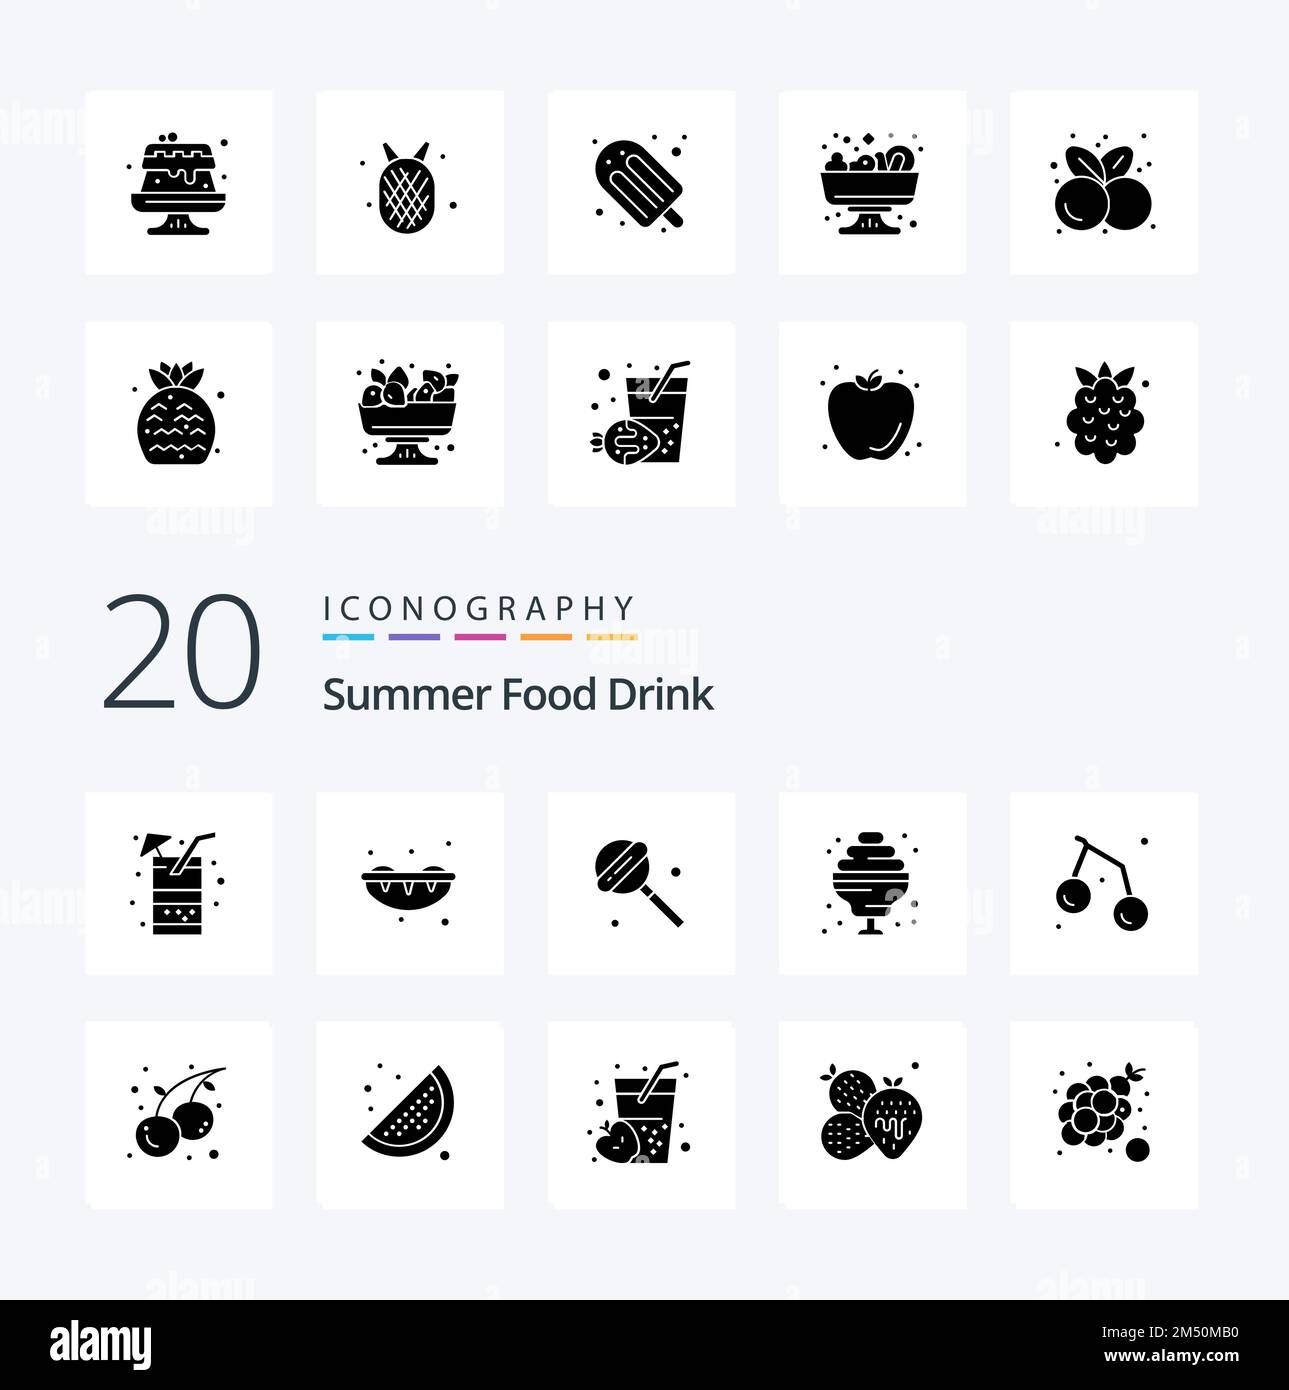 20 Summer Food Drink Solid Glyph Icon Pack comme bonbon d'été de fruits sucrerie d'été Illustration de Vecteur